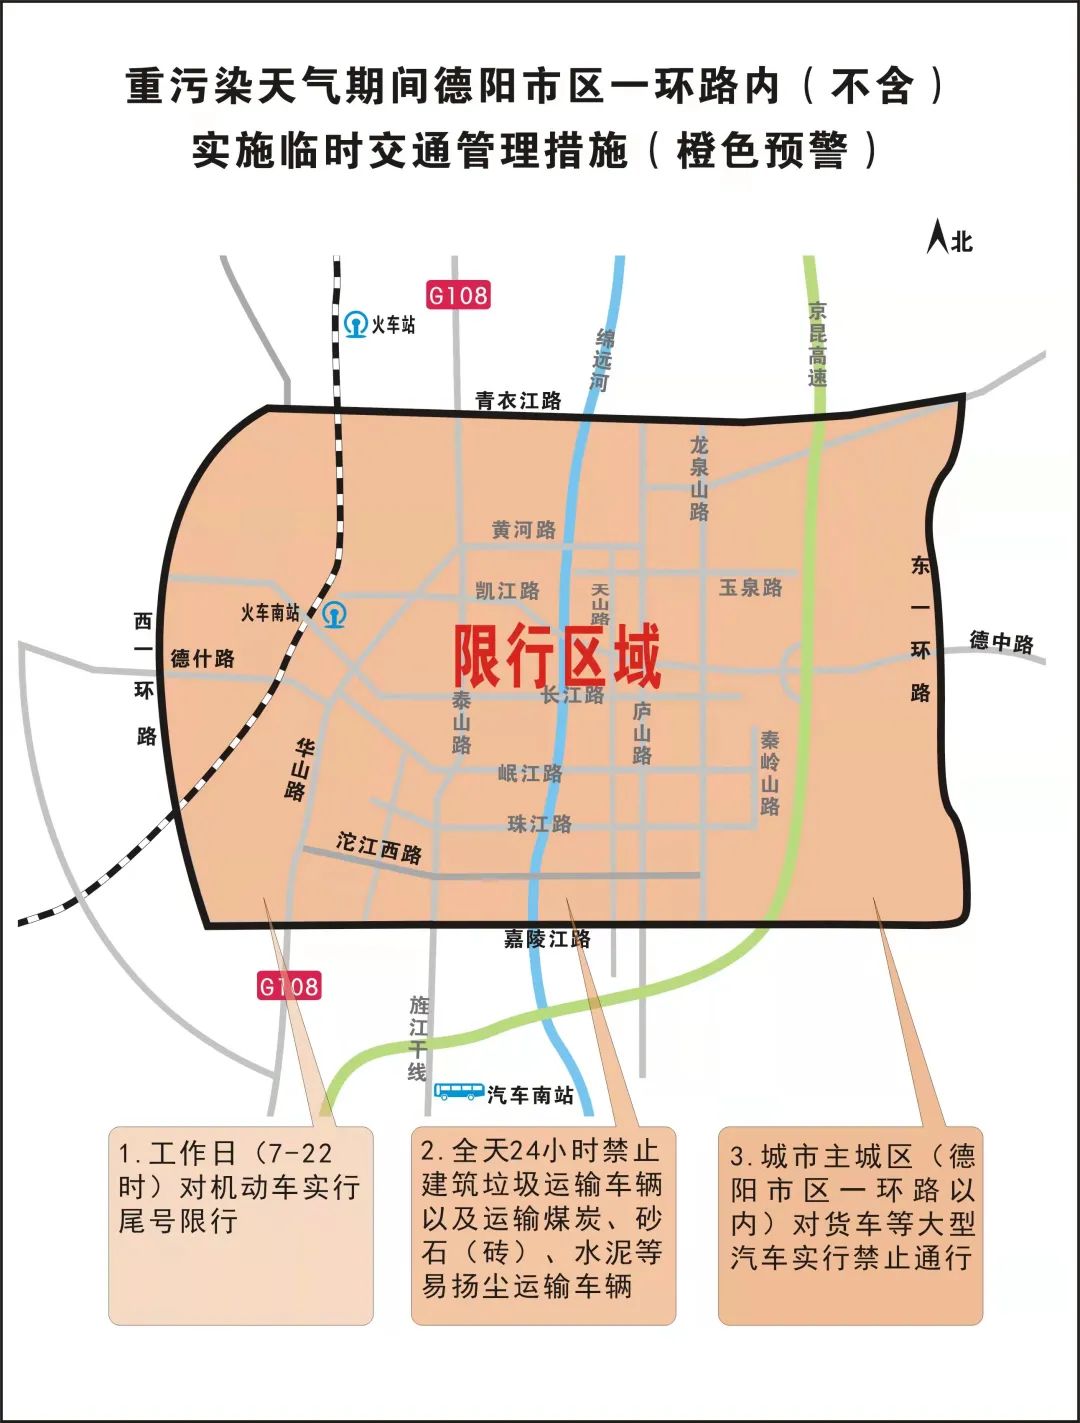 邯郸限行区域地图高清图片